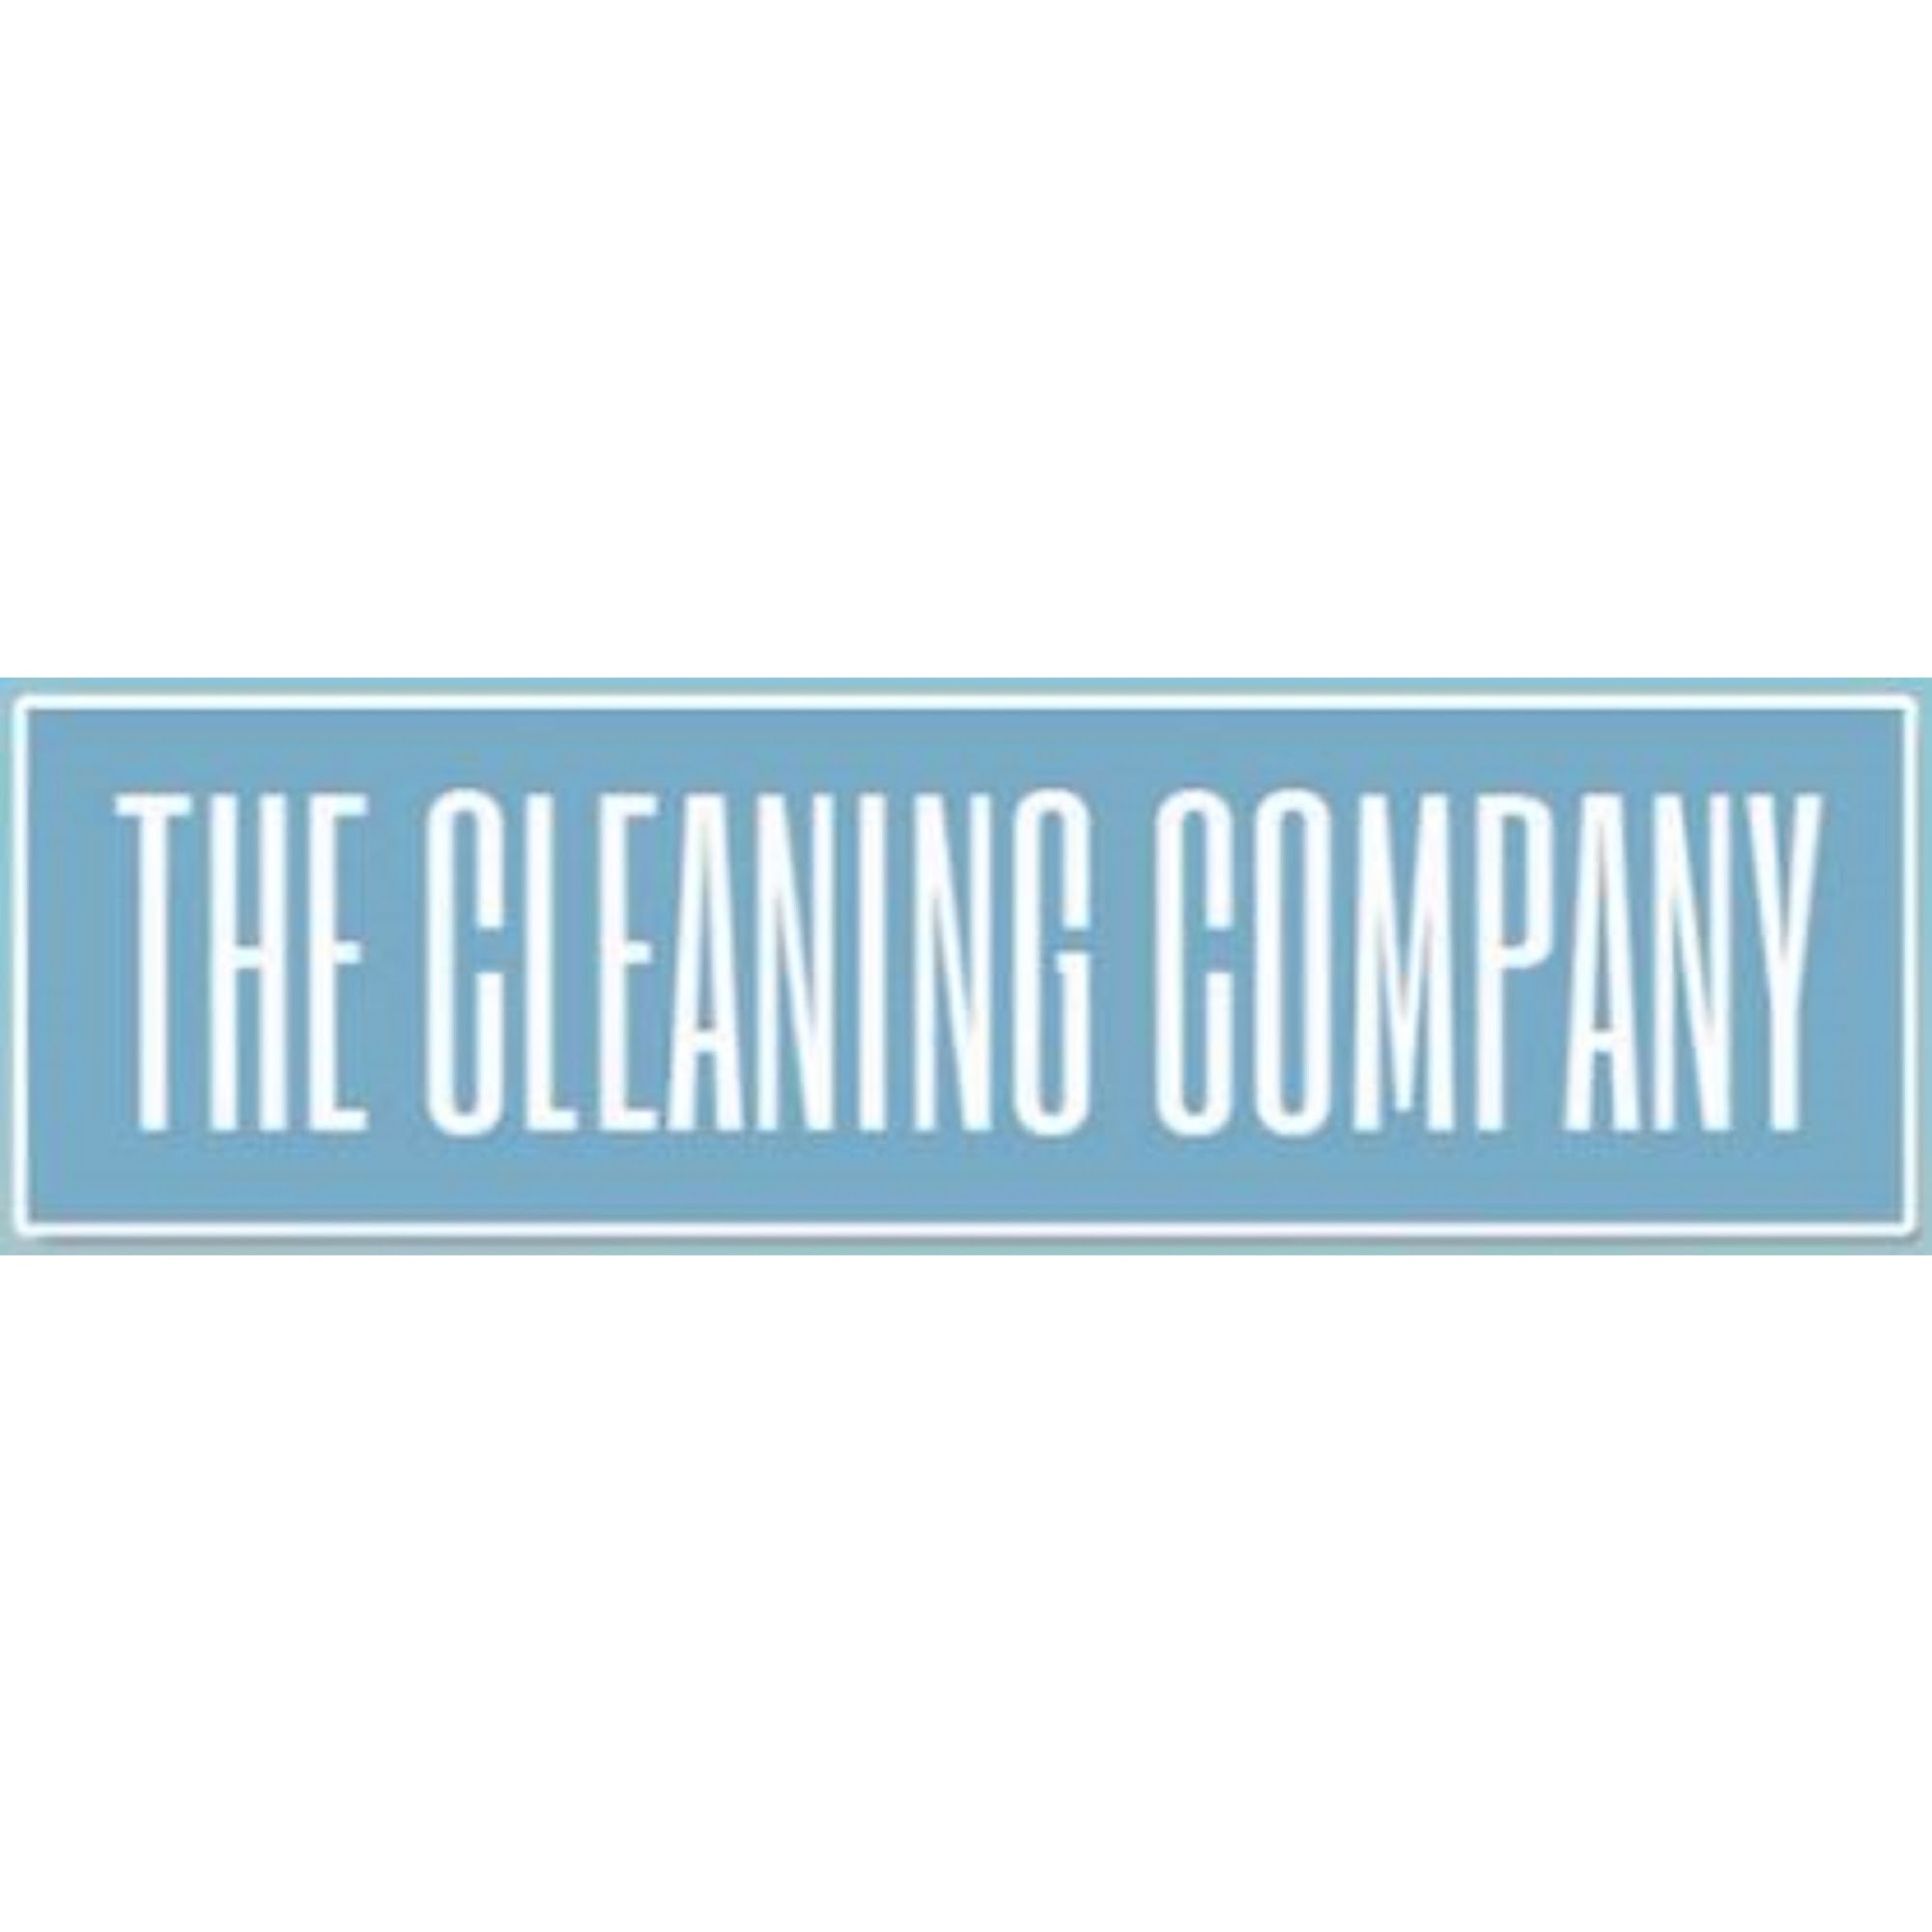 The Cleaning Company 4571 Lake Isabella Blvd, Lake Isabella California 93240